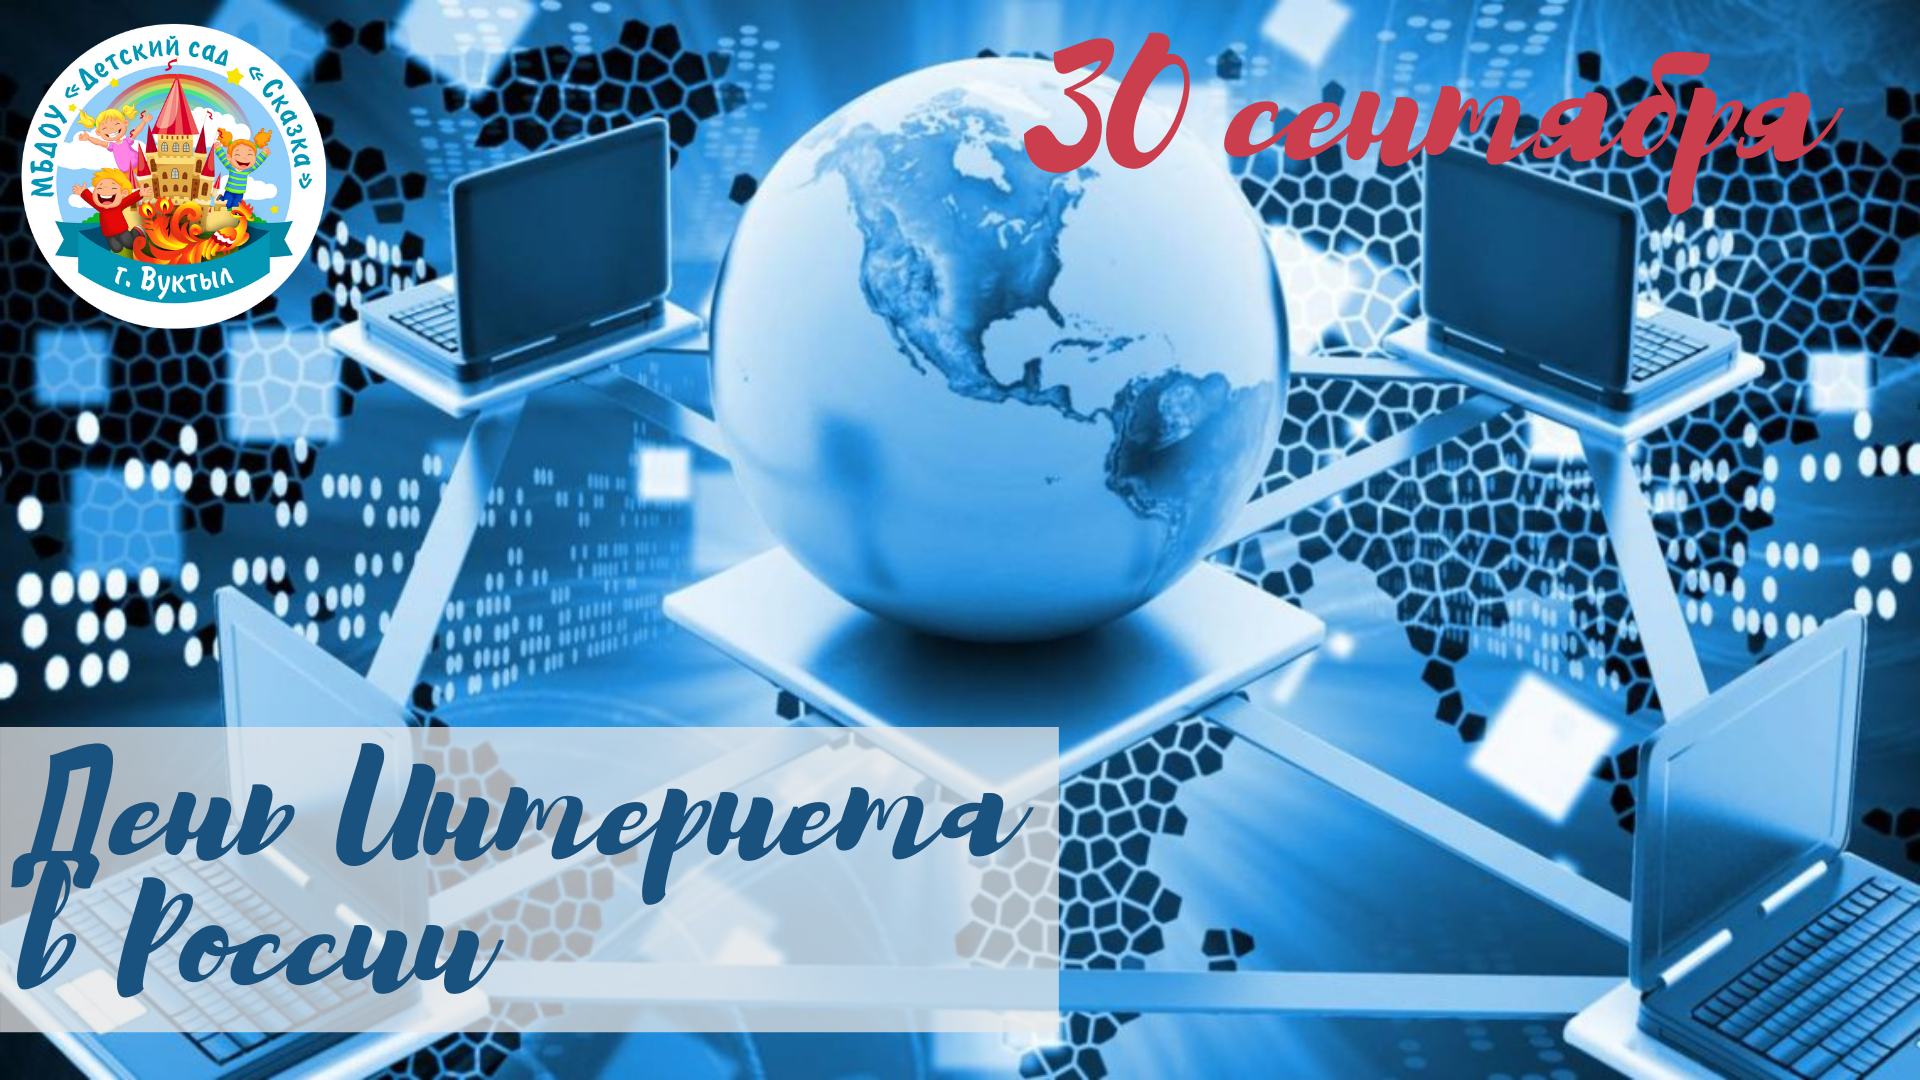 Заказать интернет на день. День интернета в России. Поздравление с днем интернета. Всемирный день интернета. 30 Сентября день интернета.